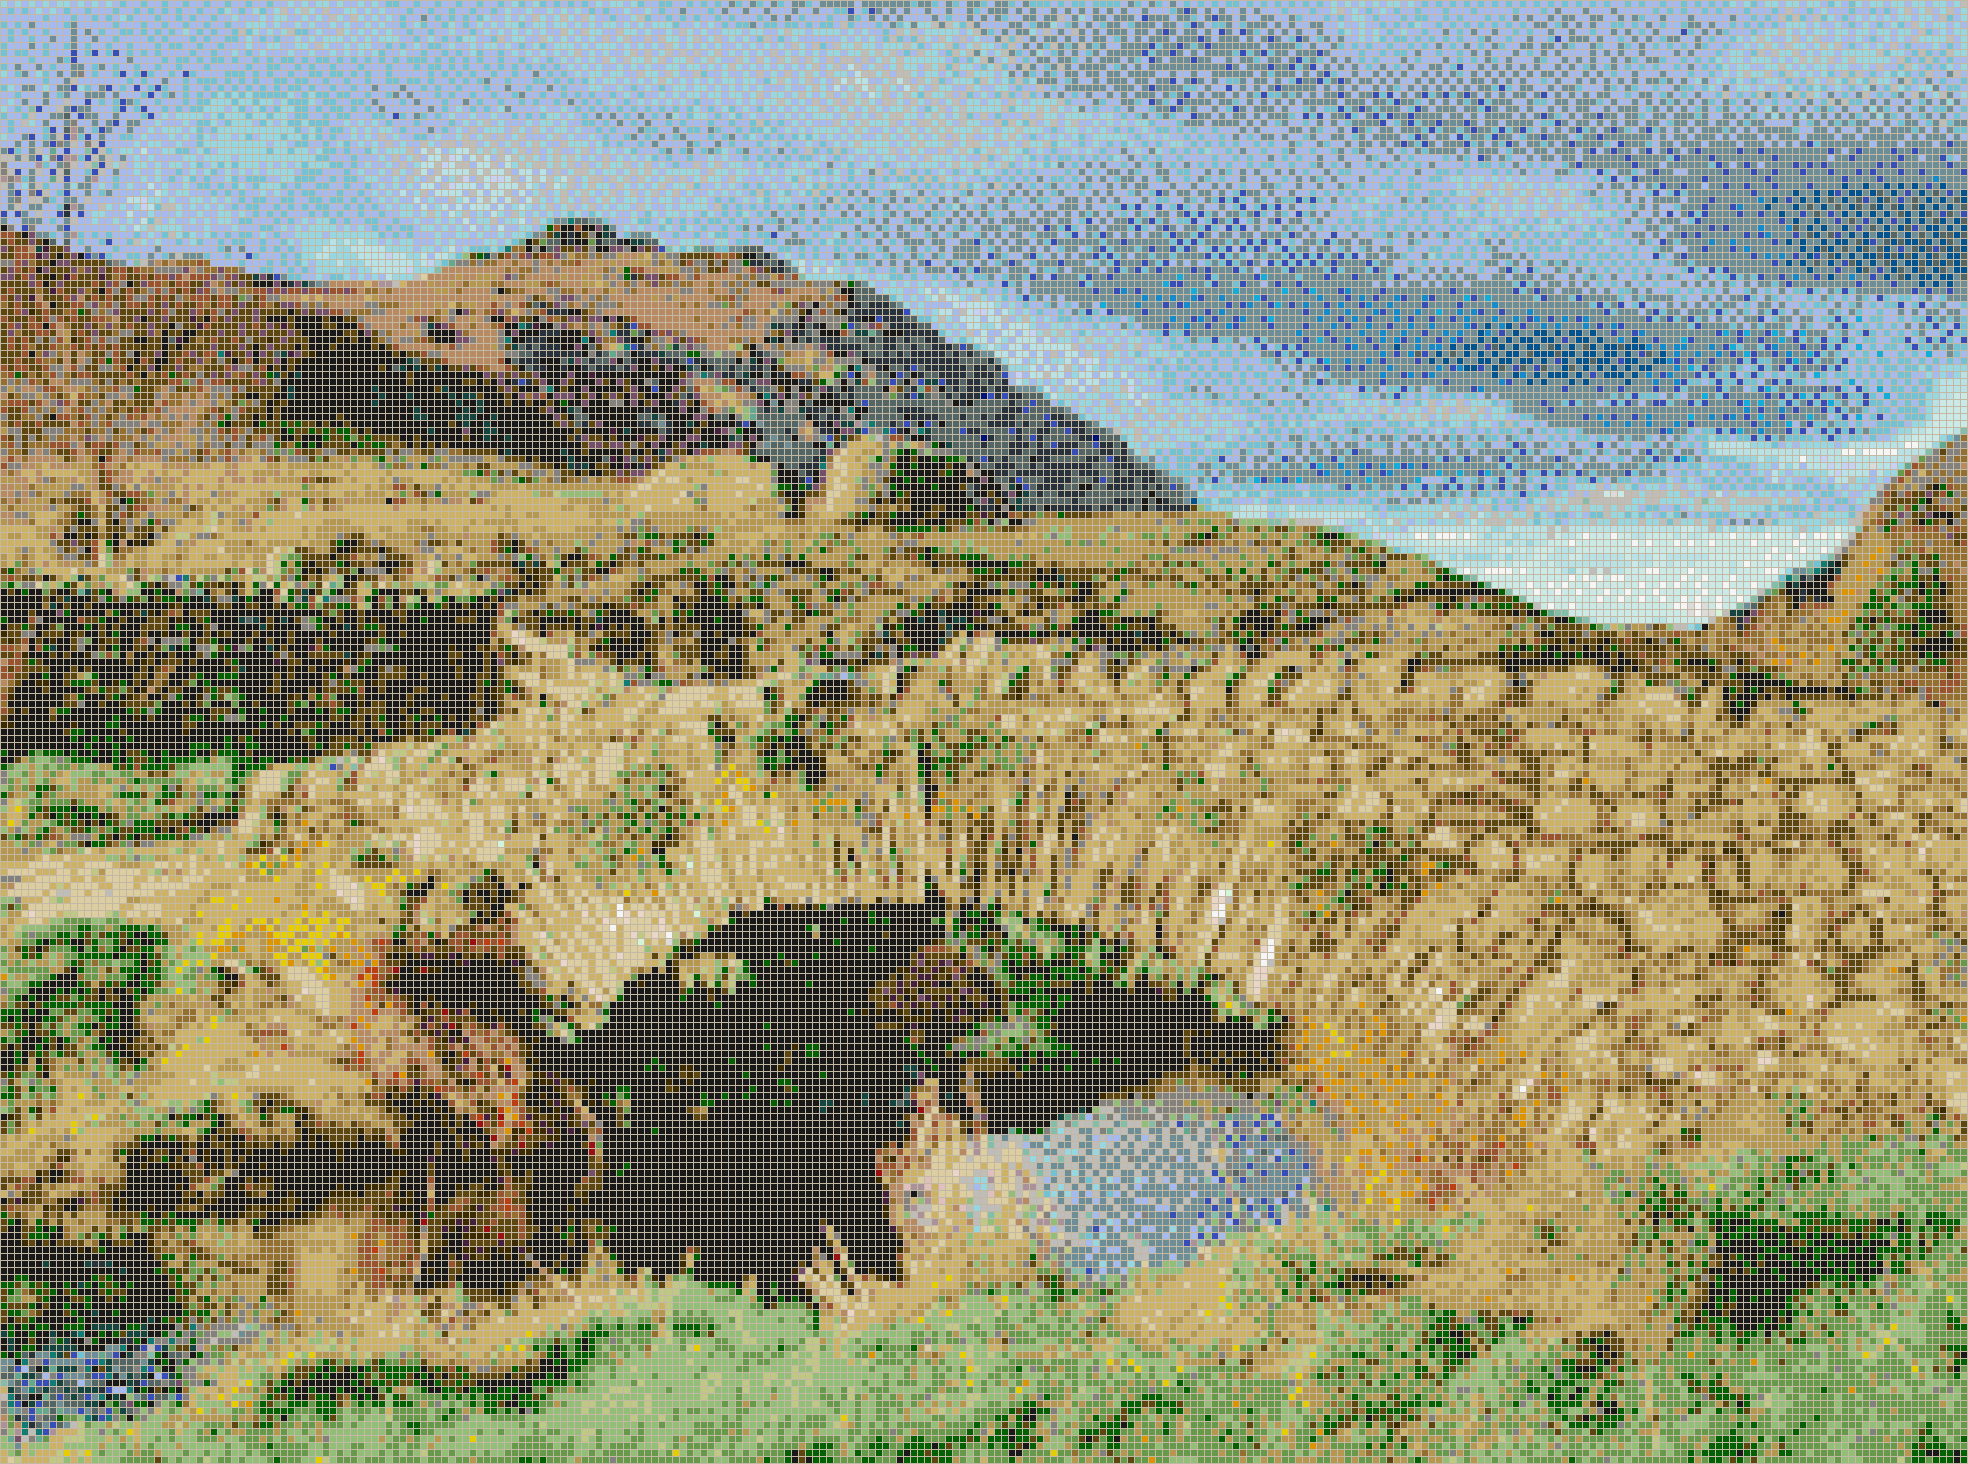 Watendlath Bridge (Lake District) - Mosaic Tile Art